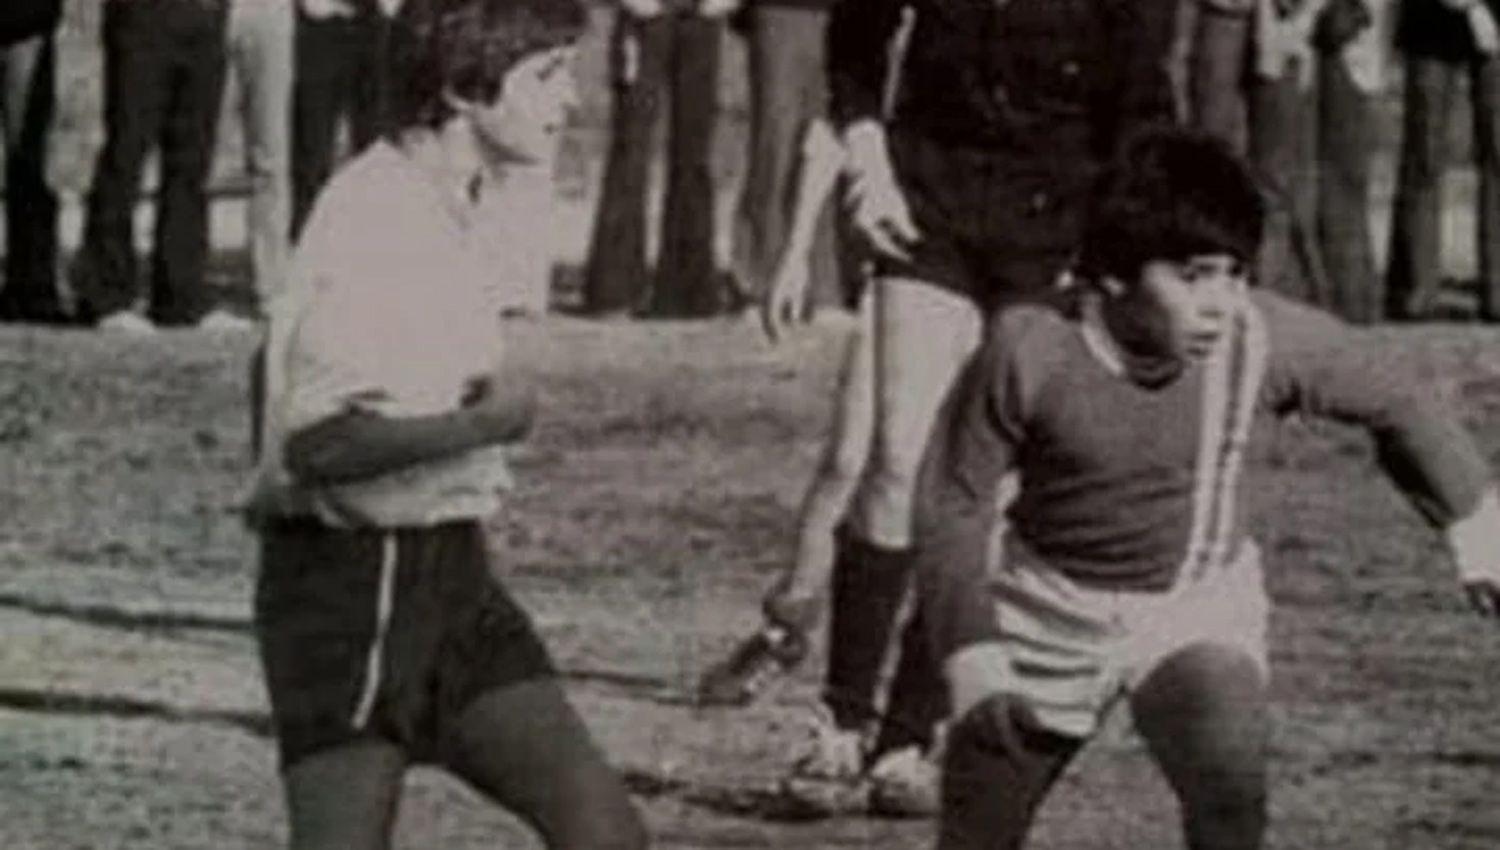 Tinelli publicoacute una foto muy vieja con Maradona y explotaron las redes